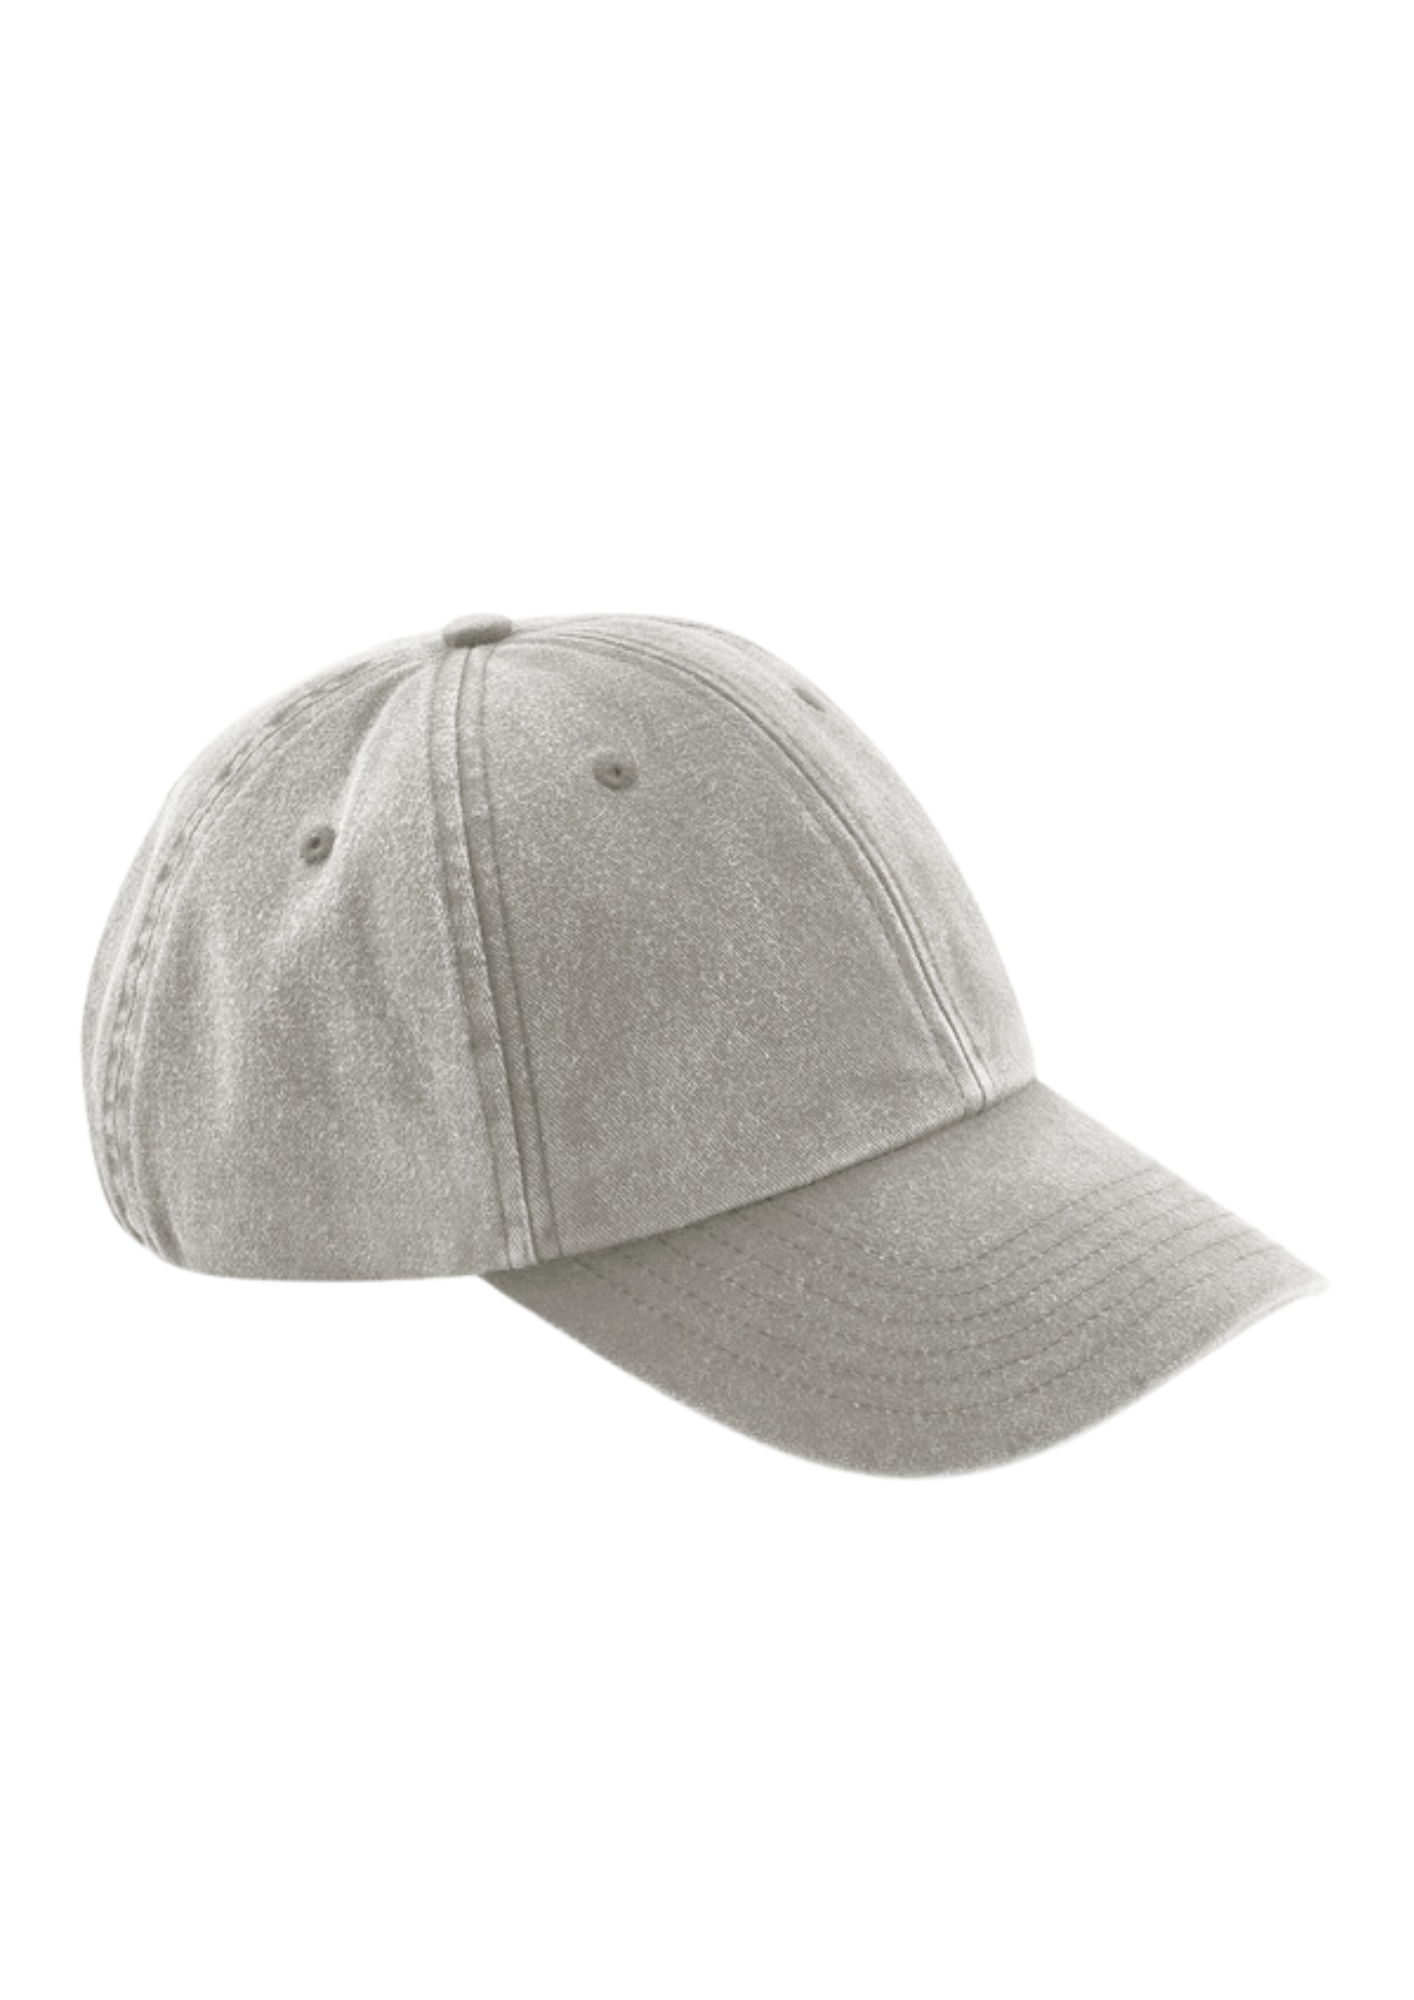 Low profile vintage dad cap